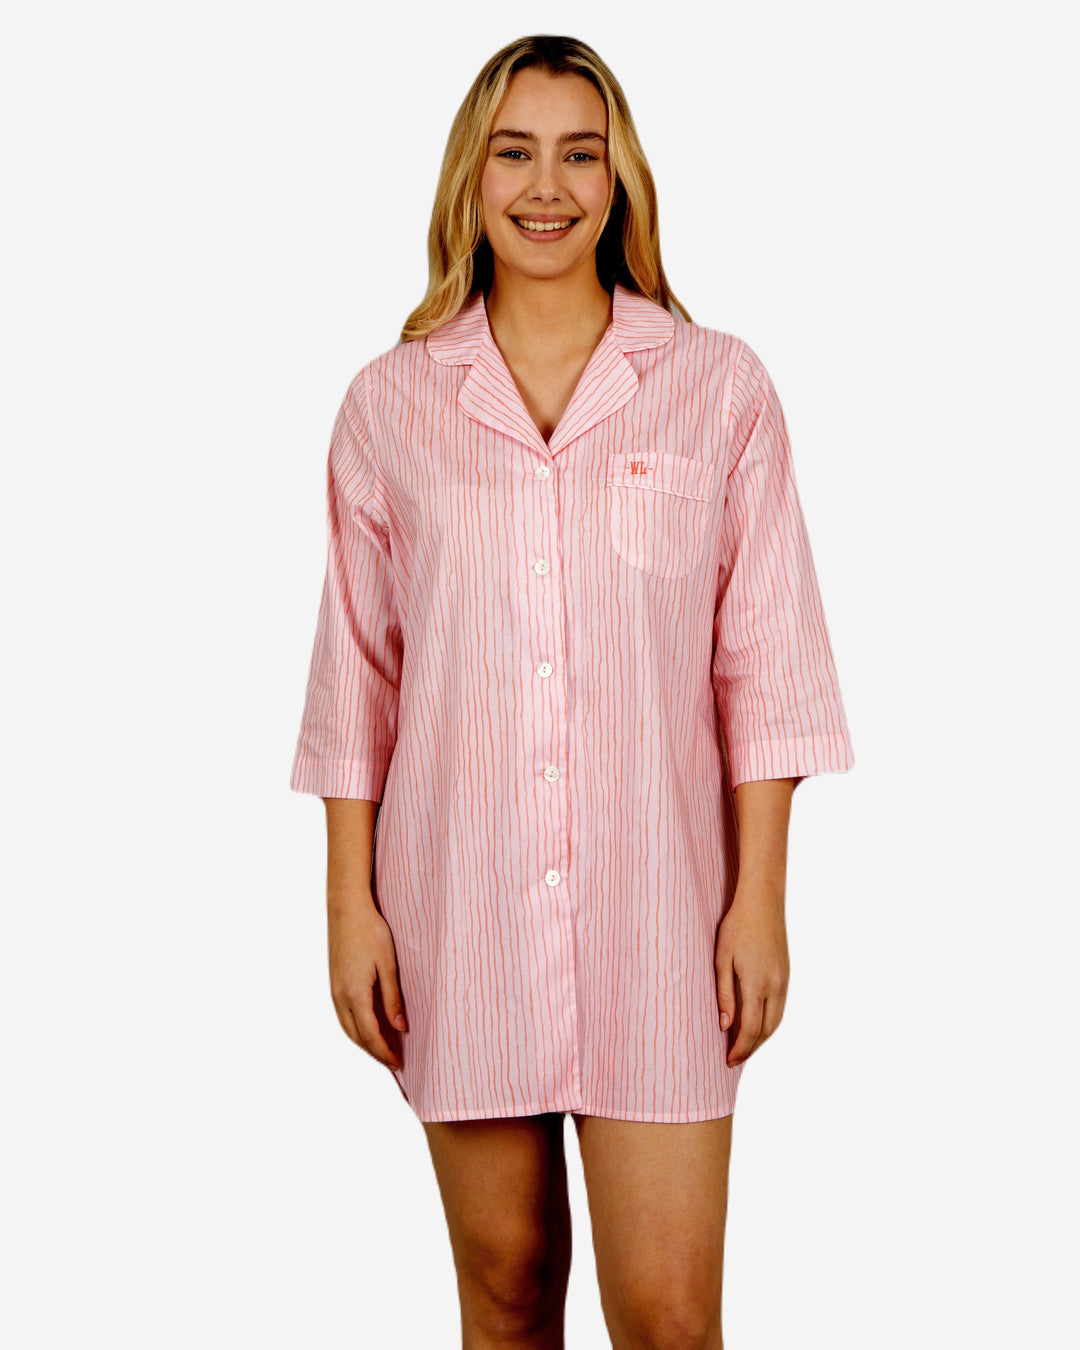 Women's Sleepshirt - Shaky Pink